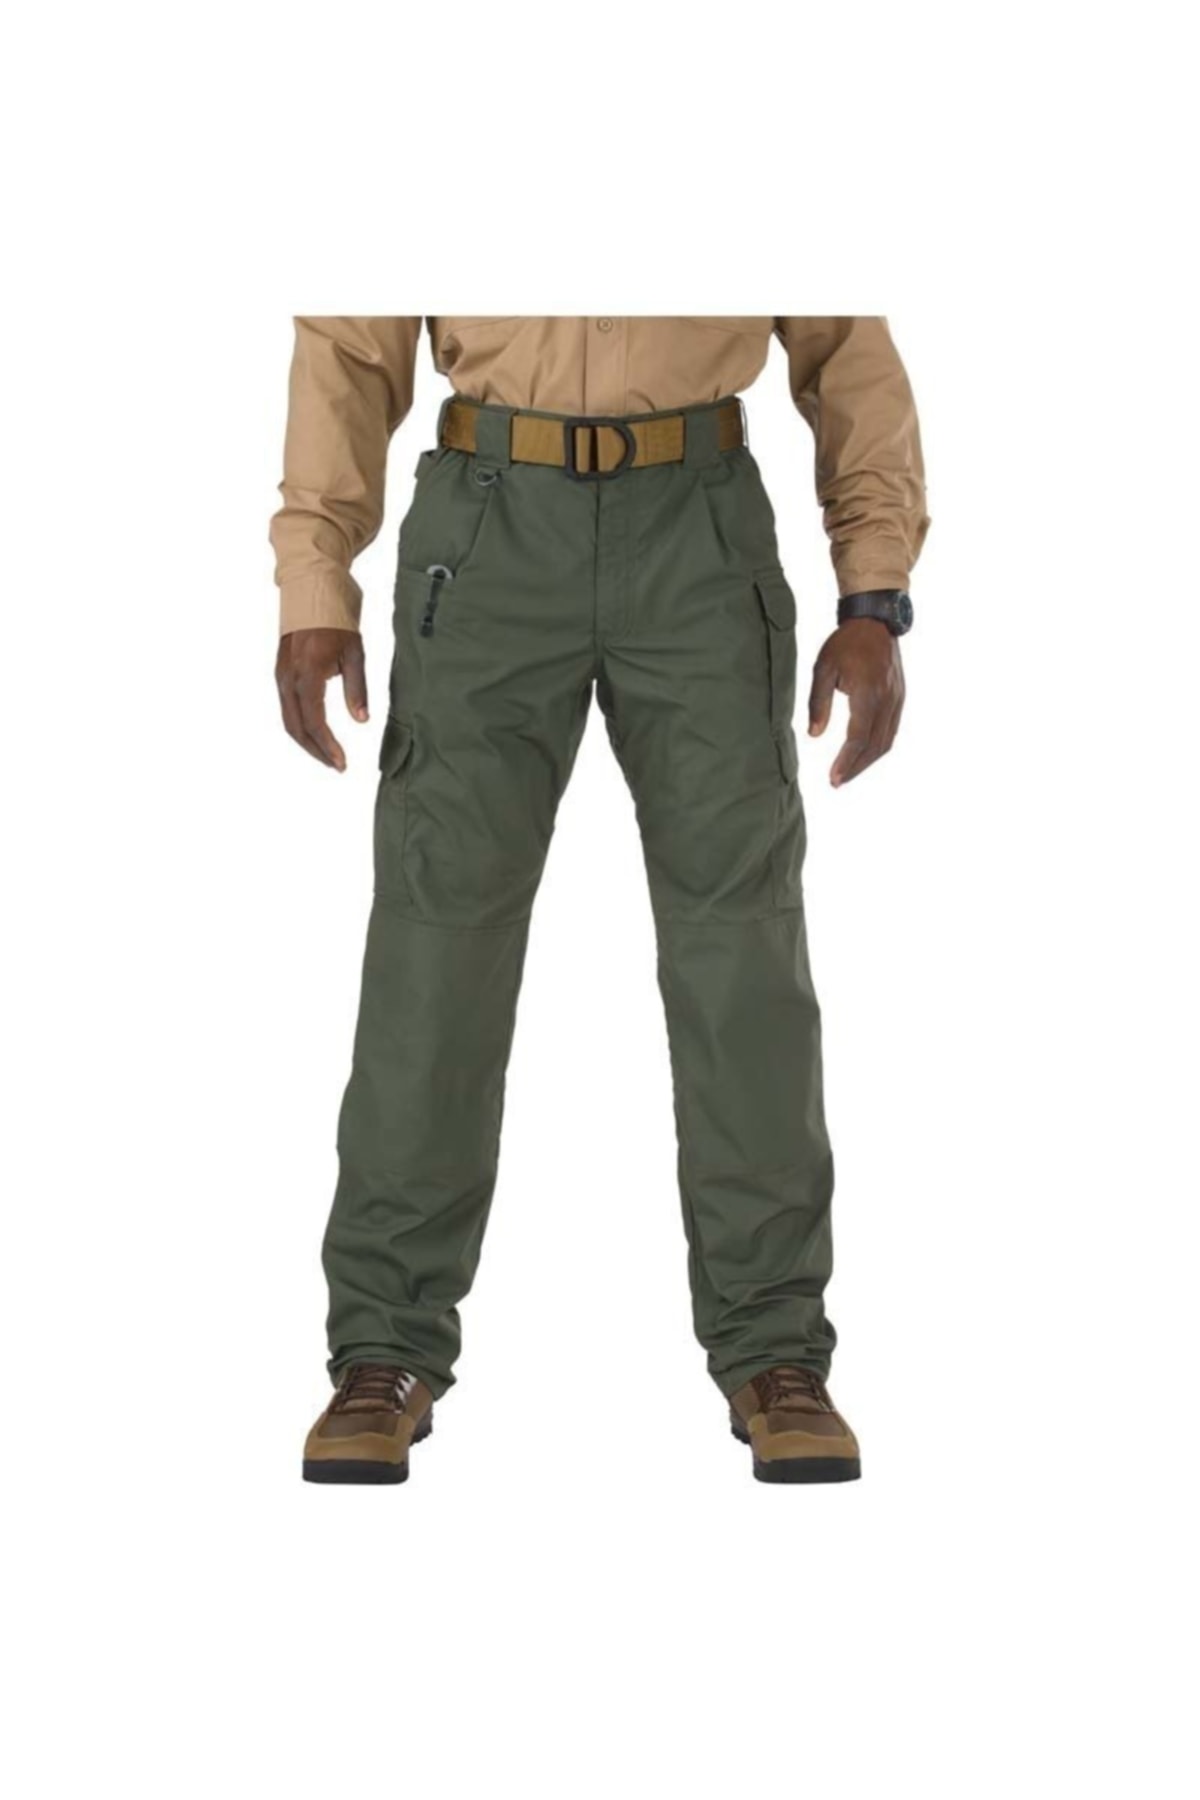 5.11 Tactical Pro Pantolon Yeşil